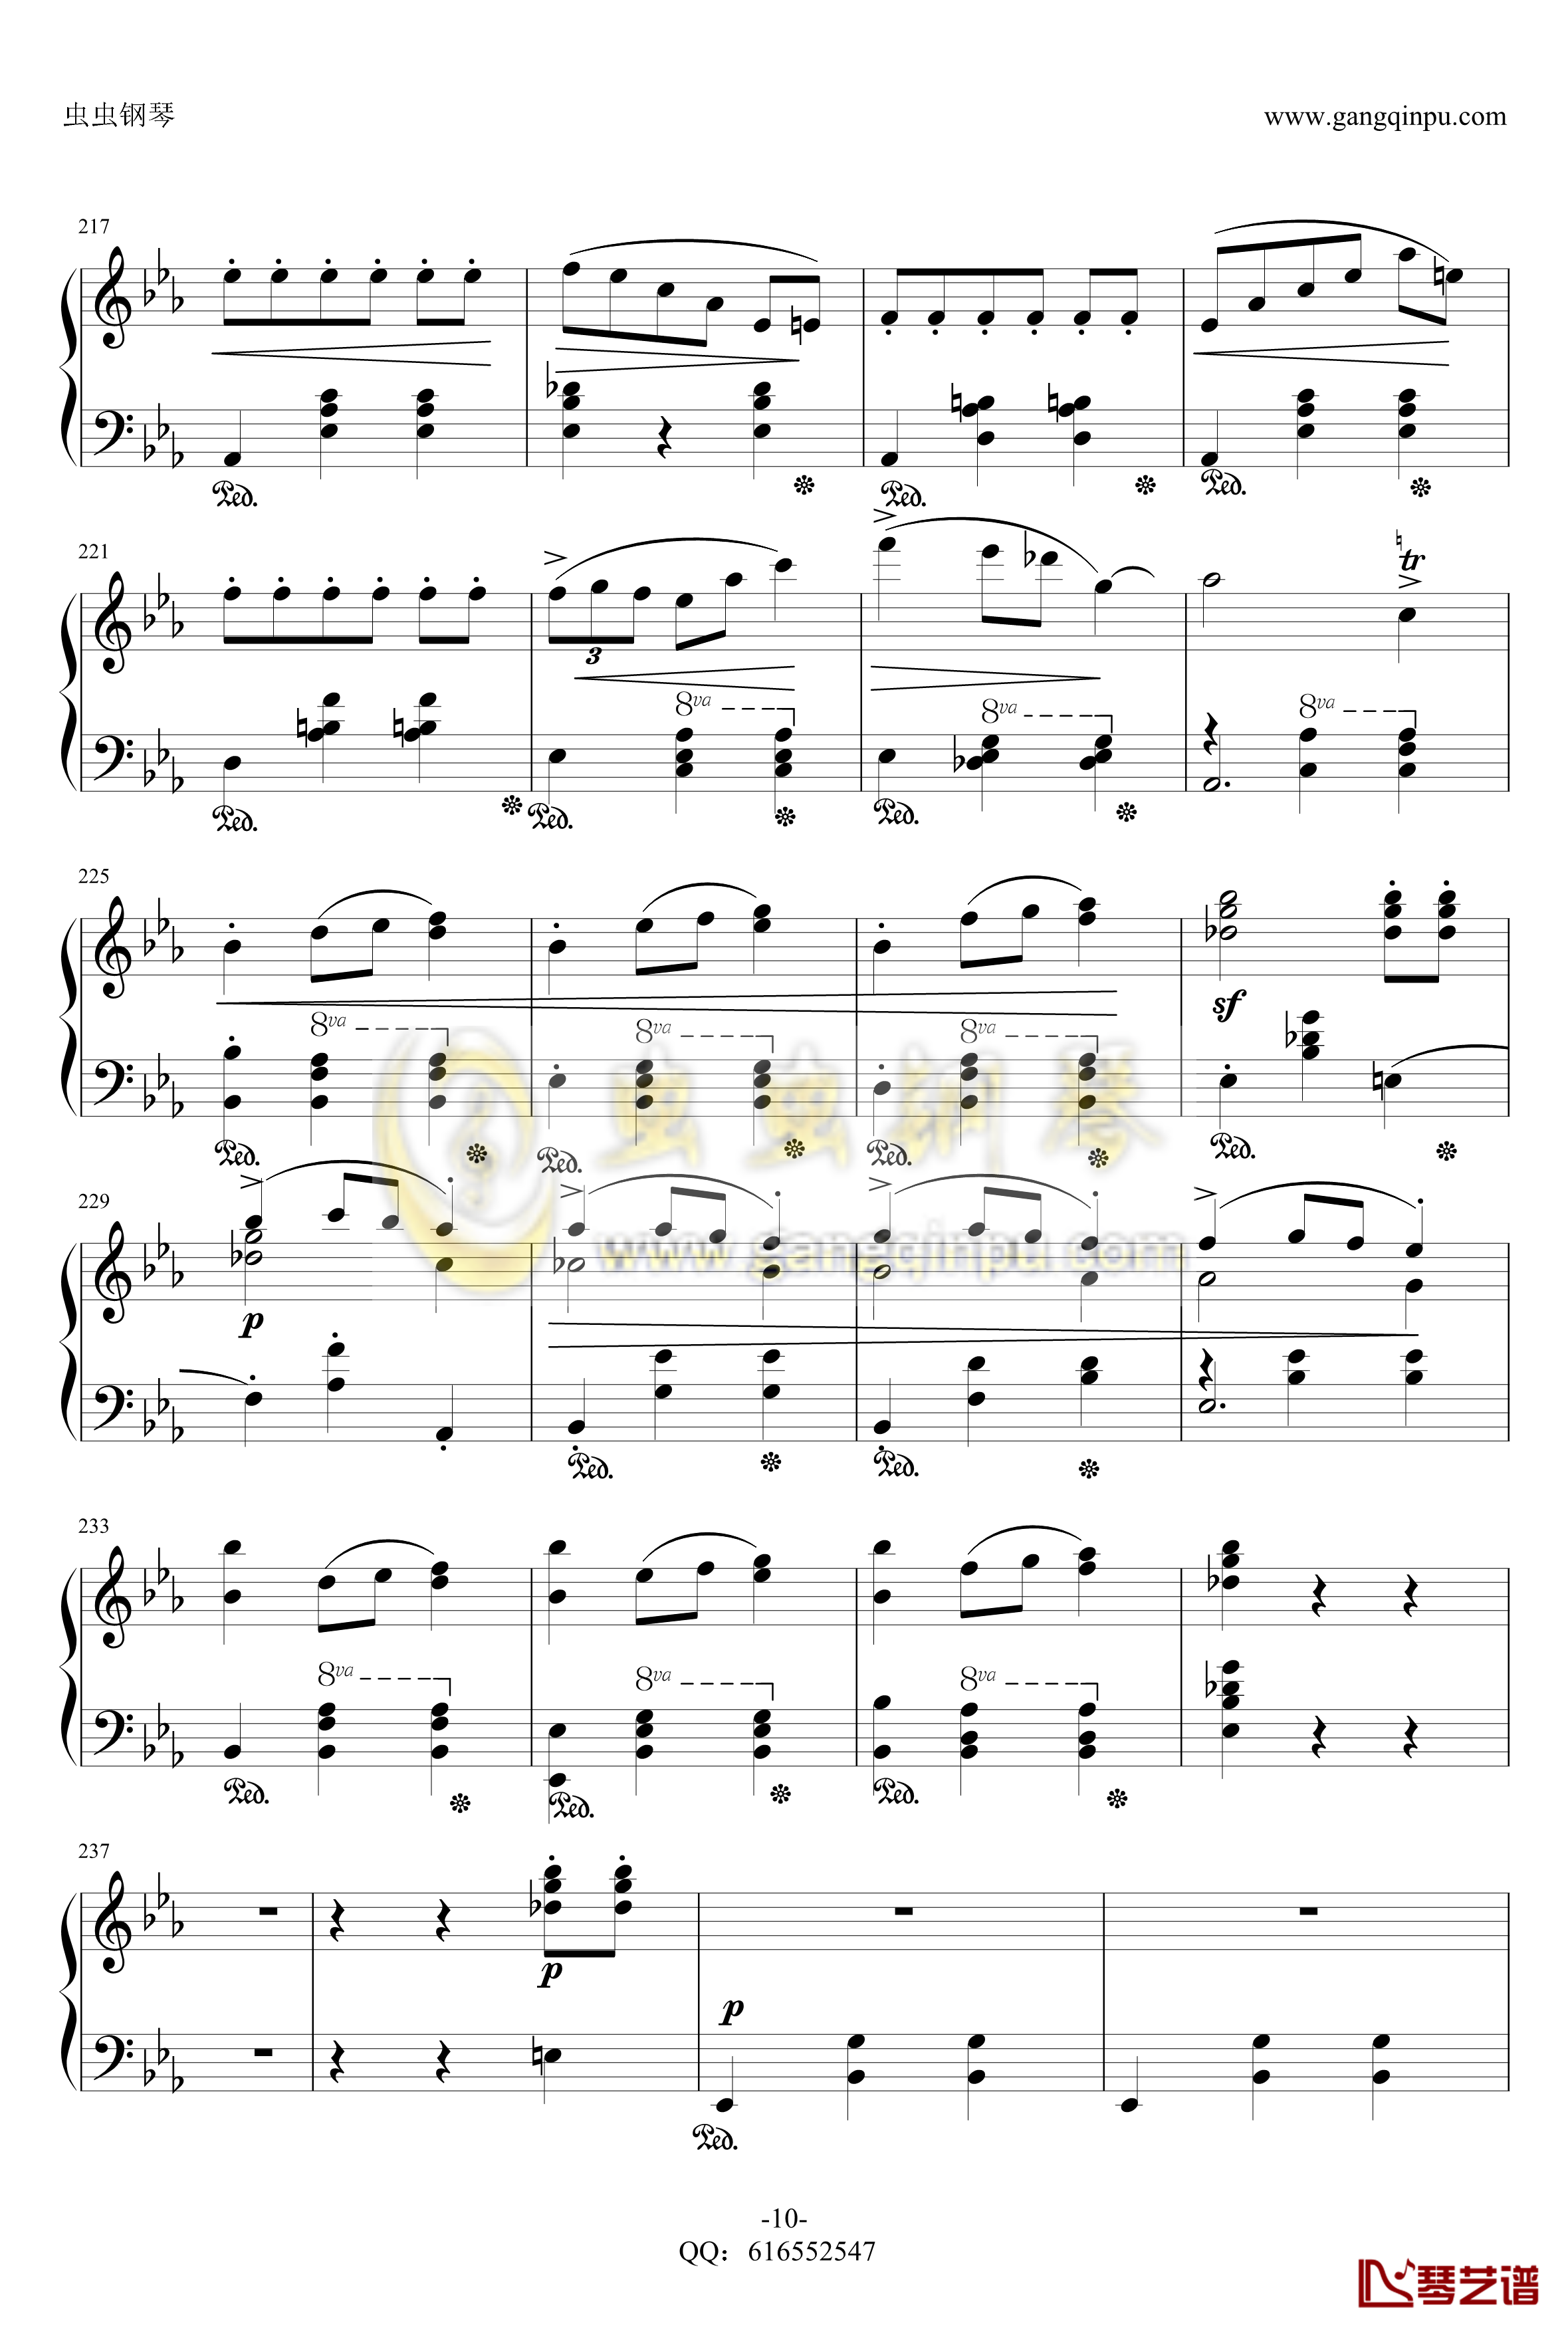 降E大调辉煌的大圆舞曲钢琴谱-金龙鱼-肖邦-chopin-10